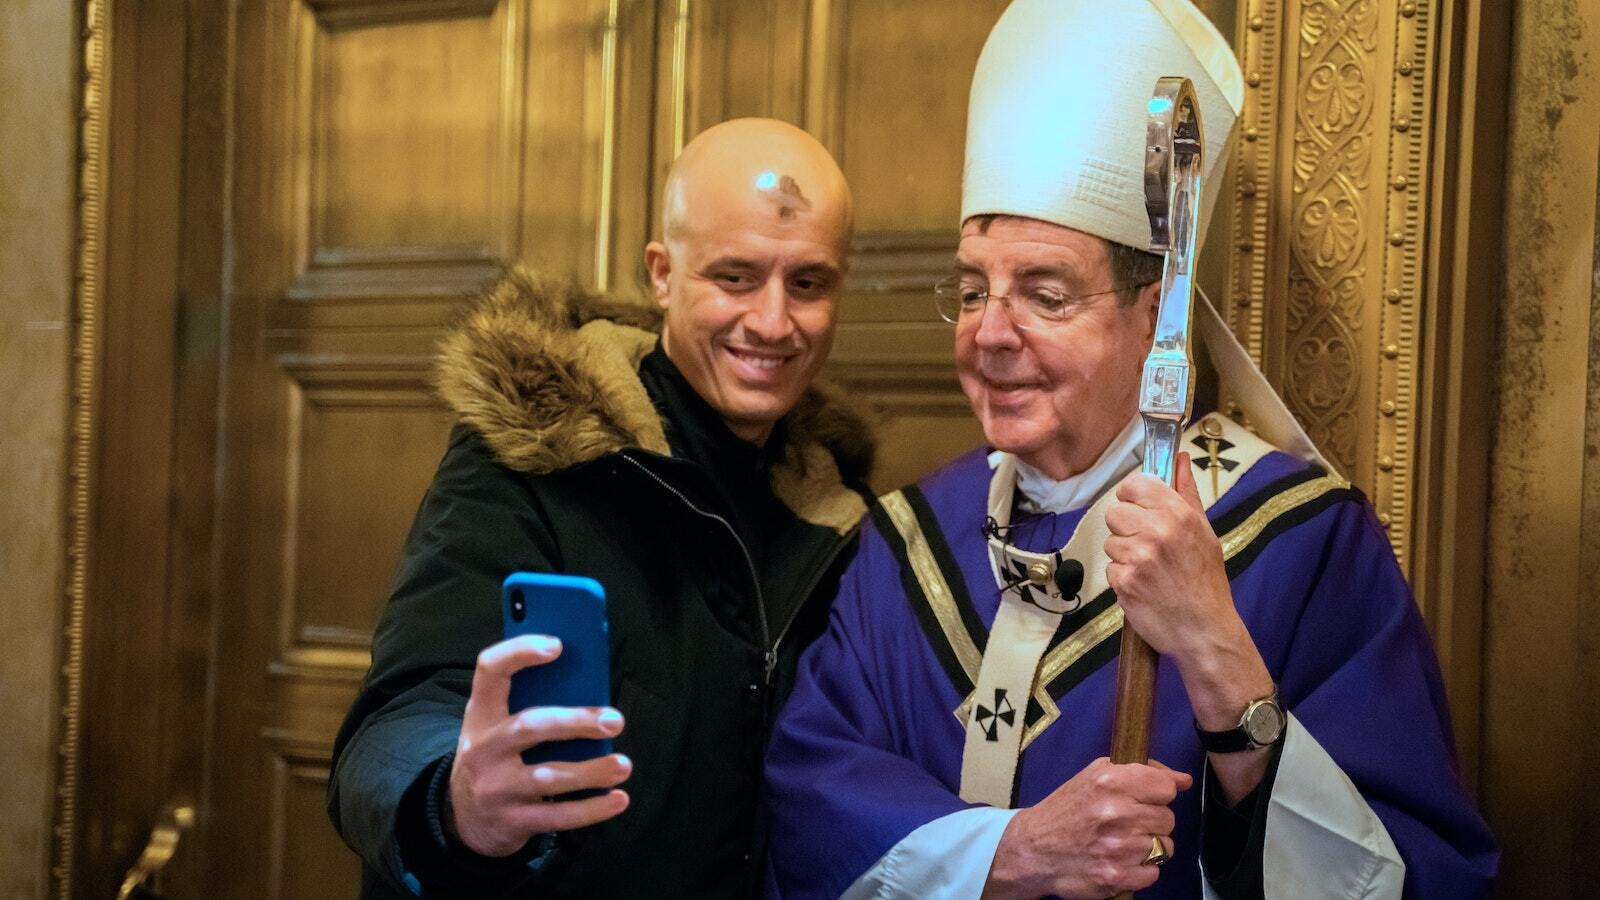 Un feligrés se toma una selfie con el Arzobispo Vigneron después de la Misa del Miércoles de Ceniza en la St. Aloysius Parish en el centro de Detroit el 27 de febrero de 2020. (Valaurian Waller | Detroit Catholic)